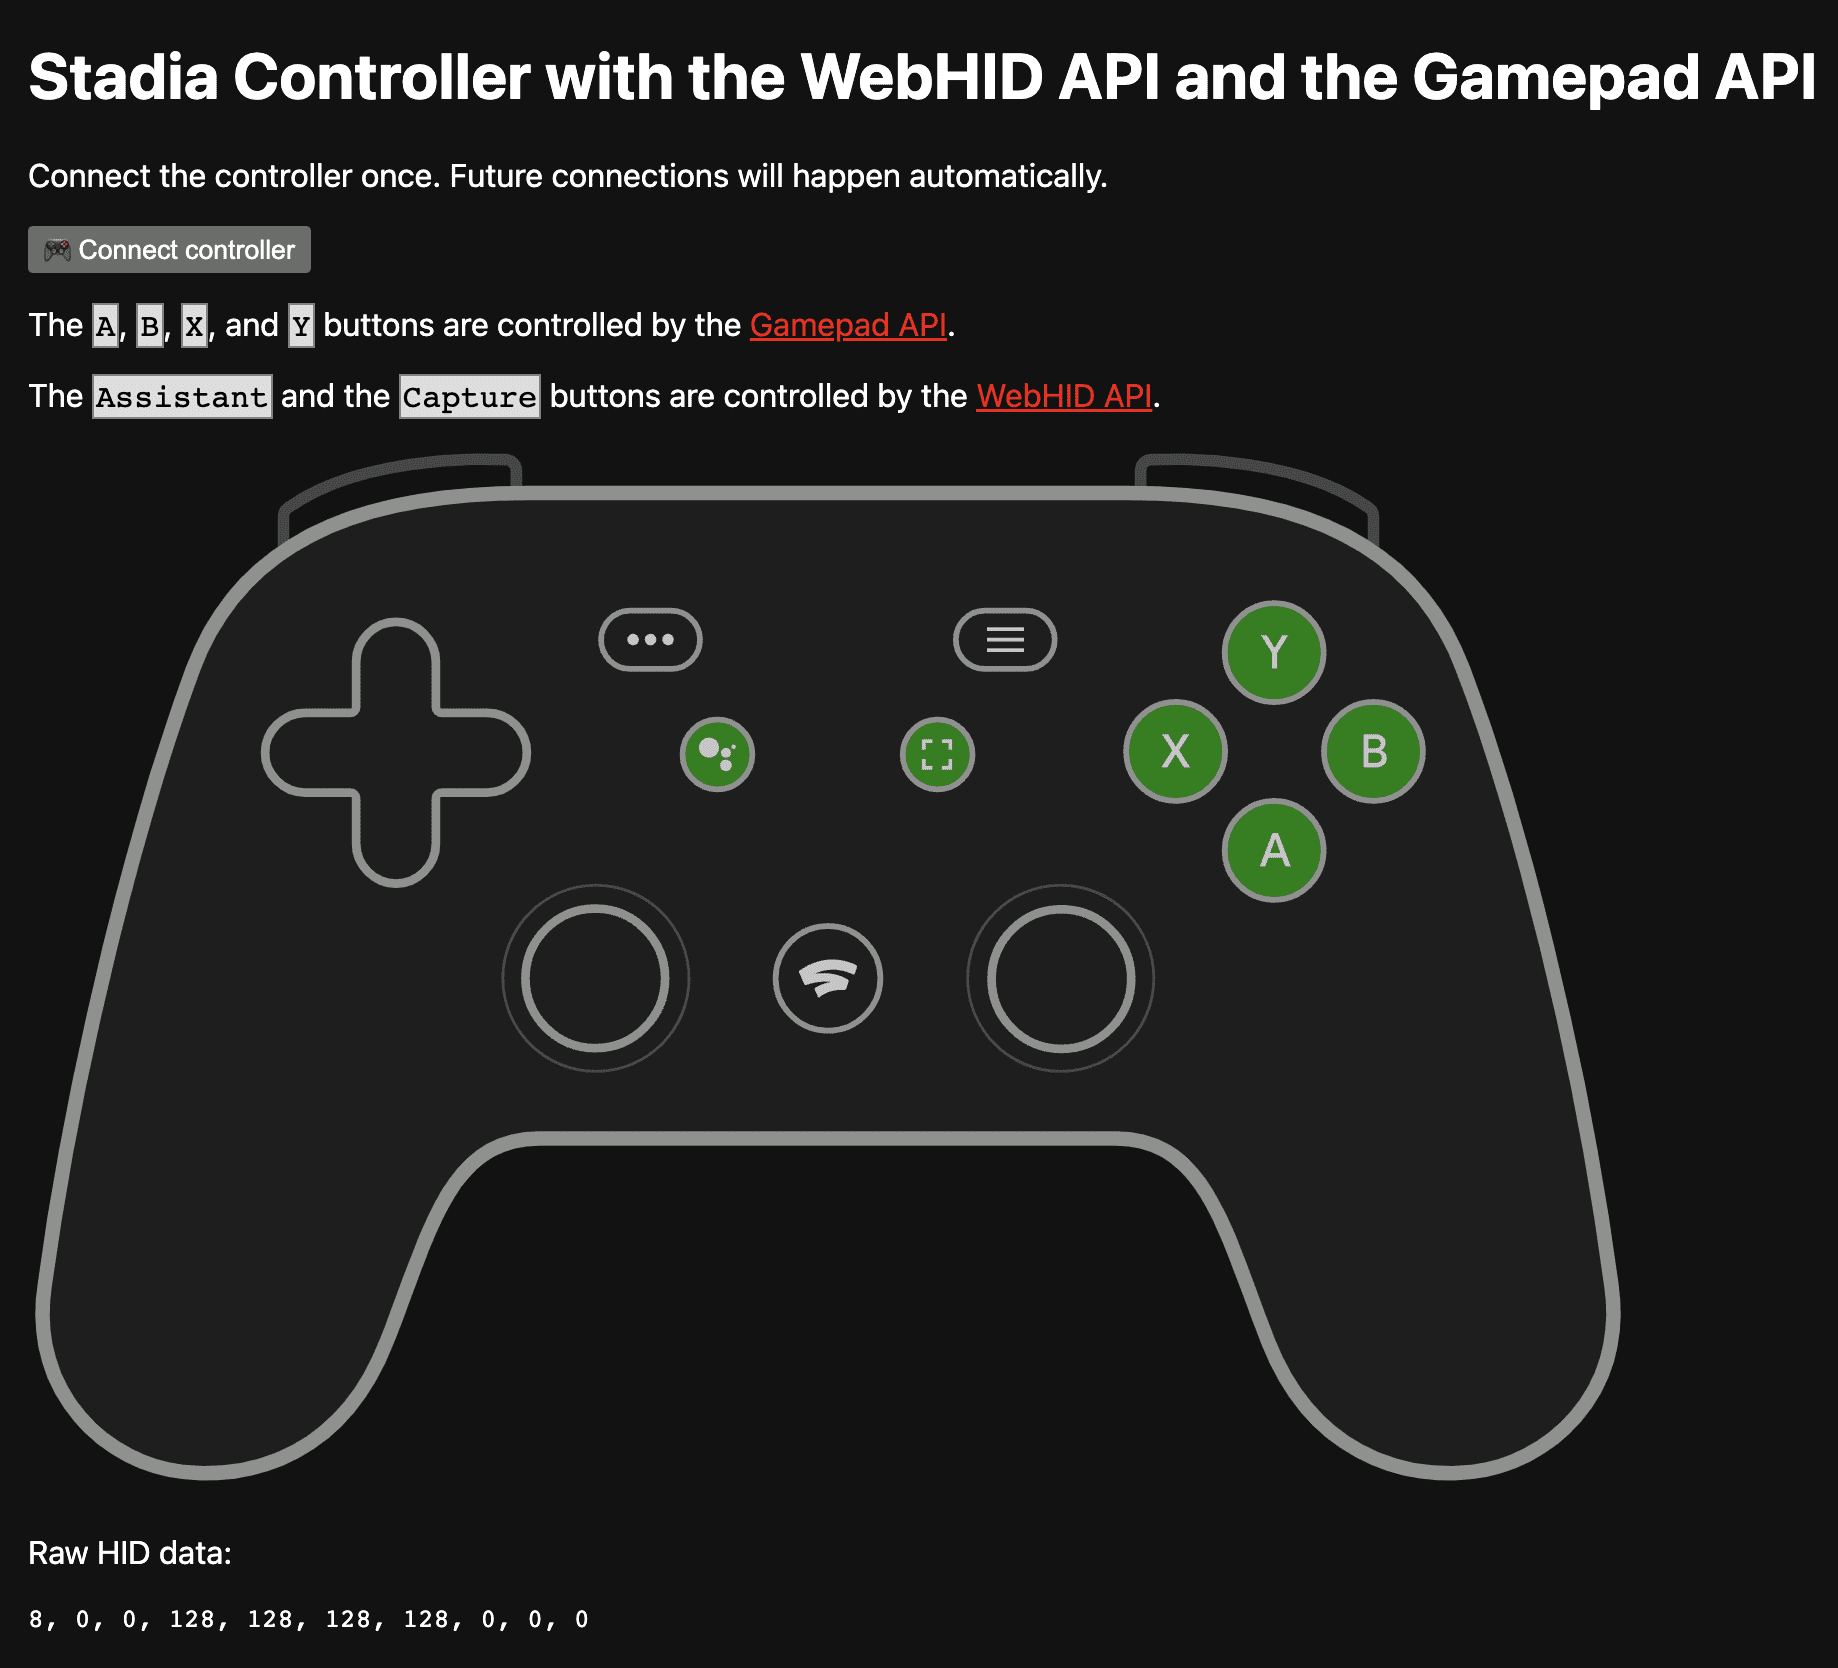 Aplikacja demonstracyjna dostępna na https://stadia-controller-webhid-gamepad.glitch.me/ z widocznymi przyciskami A, B, X i Y sterowanymi przez interfejs Gamepad API oraz przyciskami Asystenta i przechwytywania ekranu sterowanymi przez interfejs API WebHID.